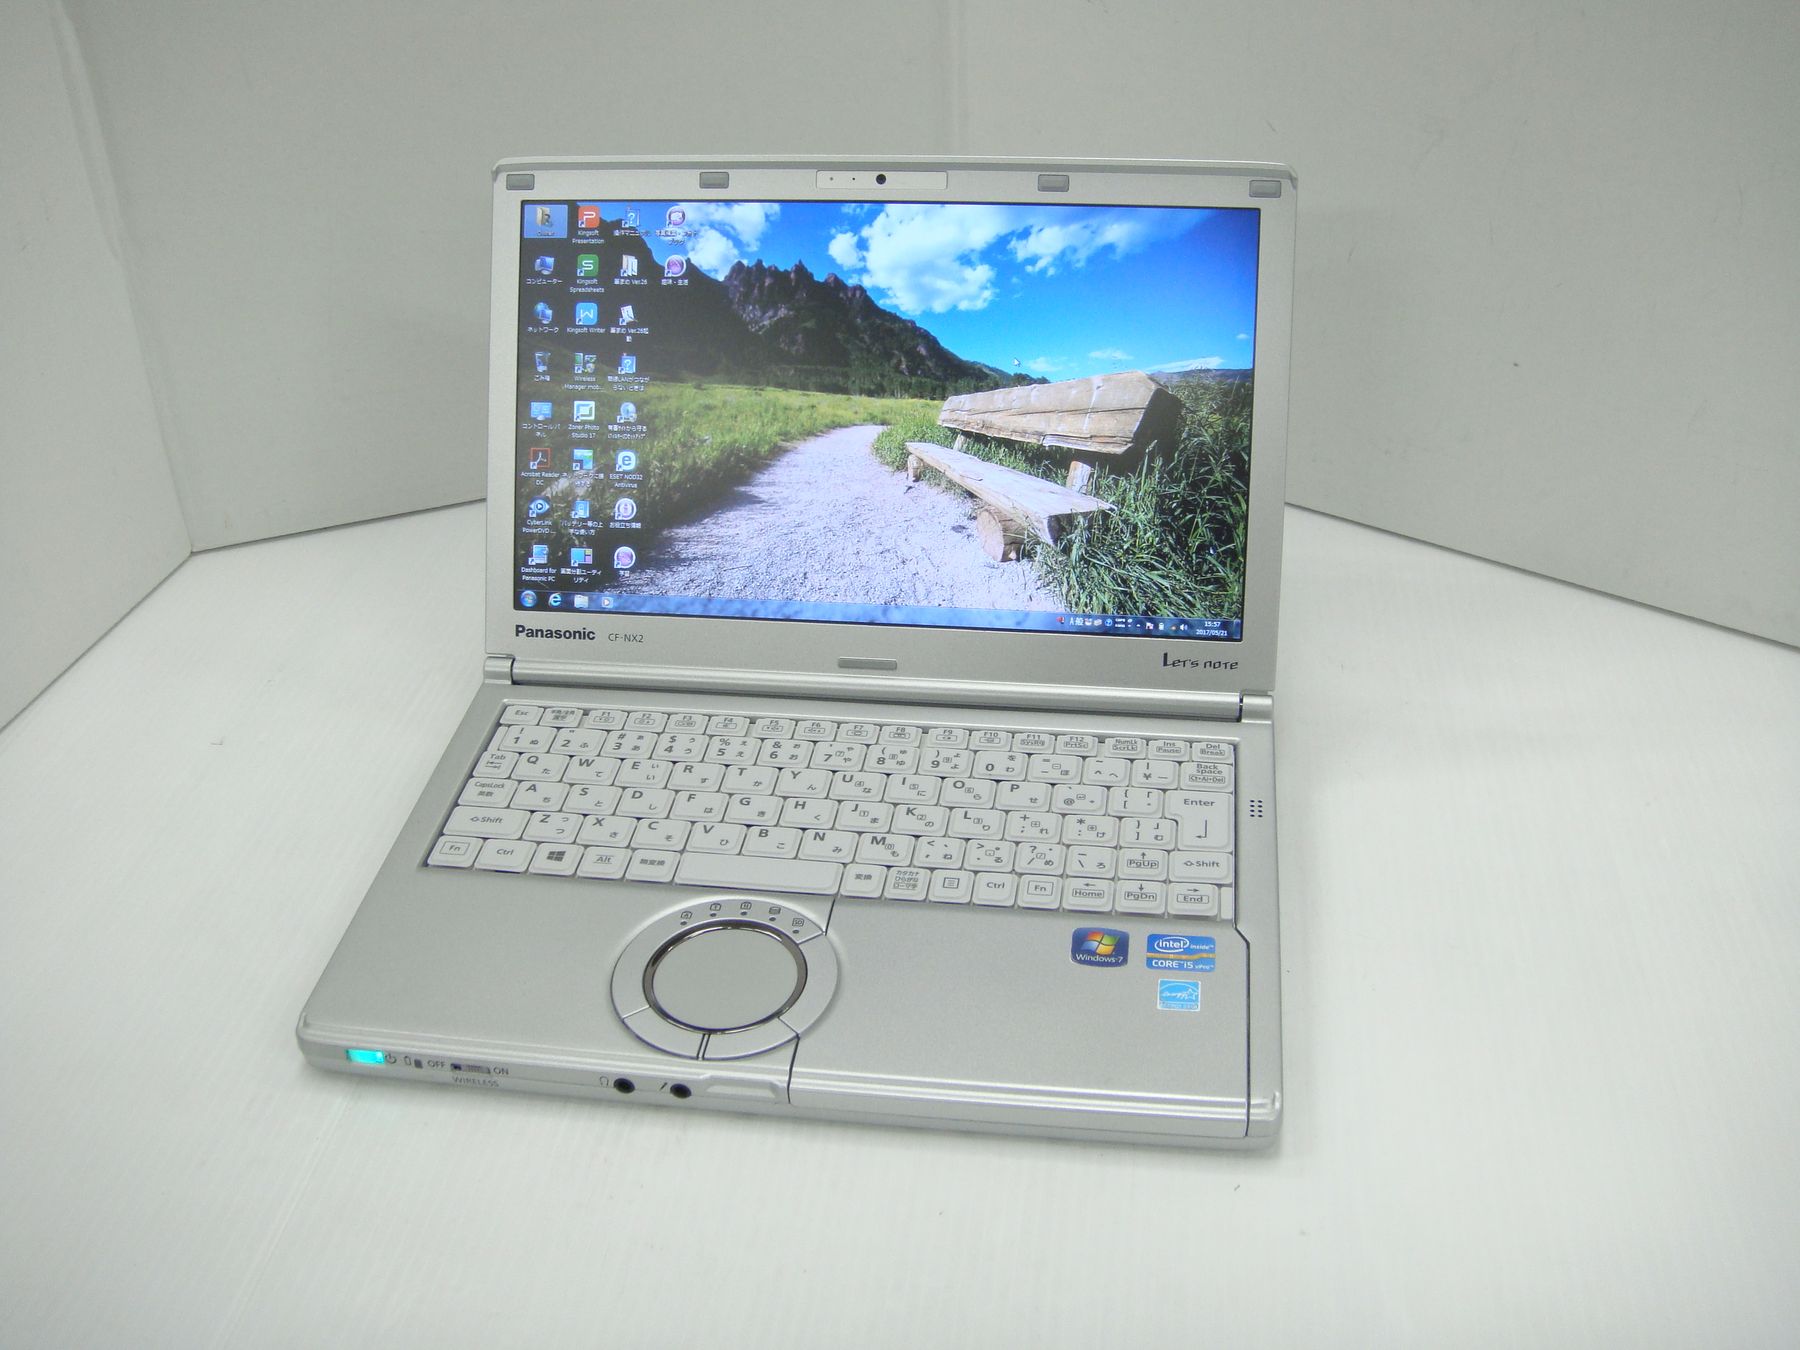 【頑丈レッツノート】 【日本製】 パナソニック Panasonic Let's note CF-NX2 Core i5 4GB HDD320GB 無線LAN Windows10 64bitWPSOffice 12.1インチ パソコン モバイルノート ノートパソコン PC Notebook